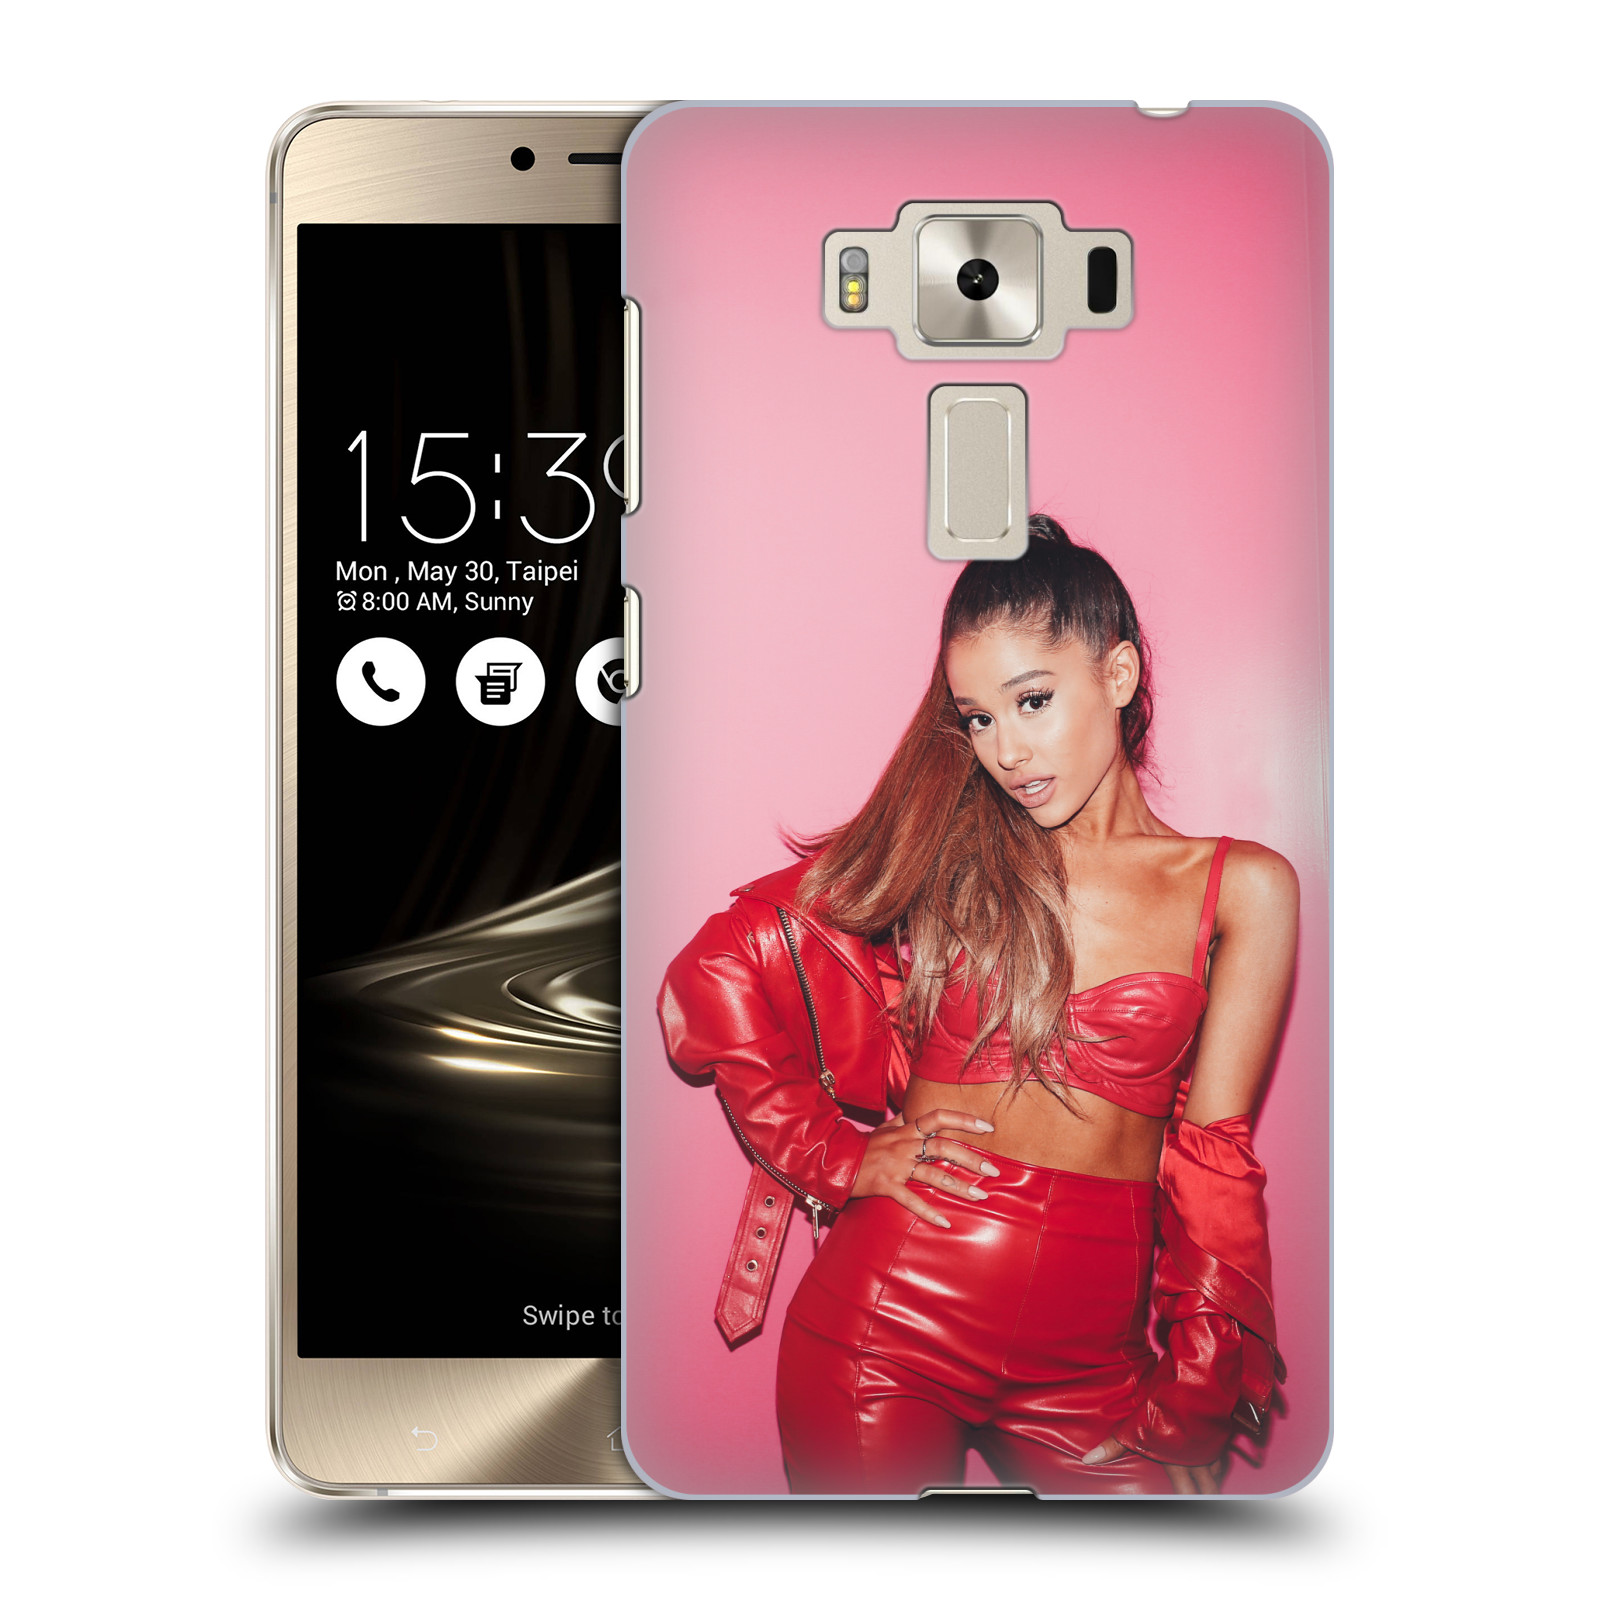 HEAD CASE plastový obal na mobil Asus Zenfone 3 DELUXE ZS550KL zpěvačka Ariana Grande Dangerous Woman růžová